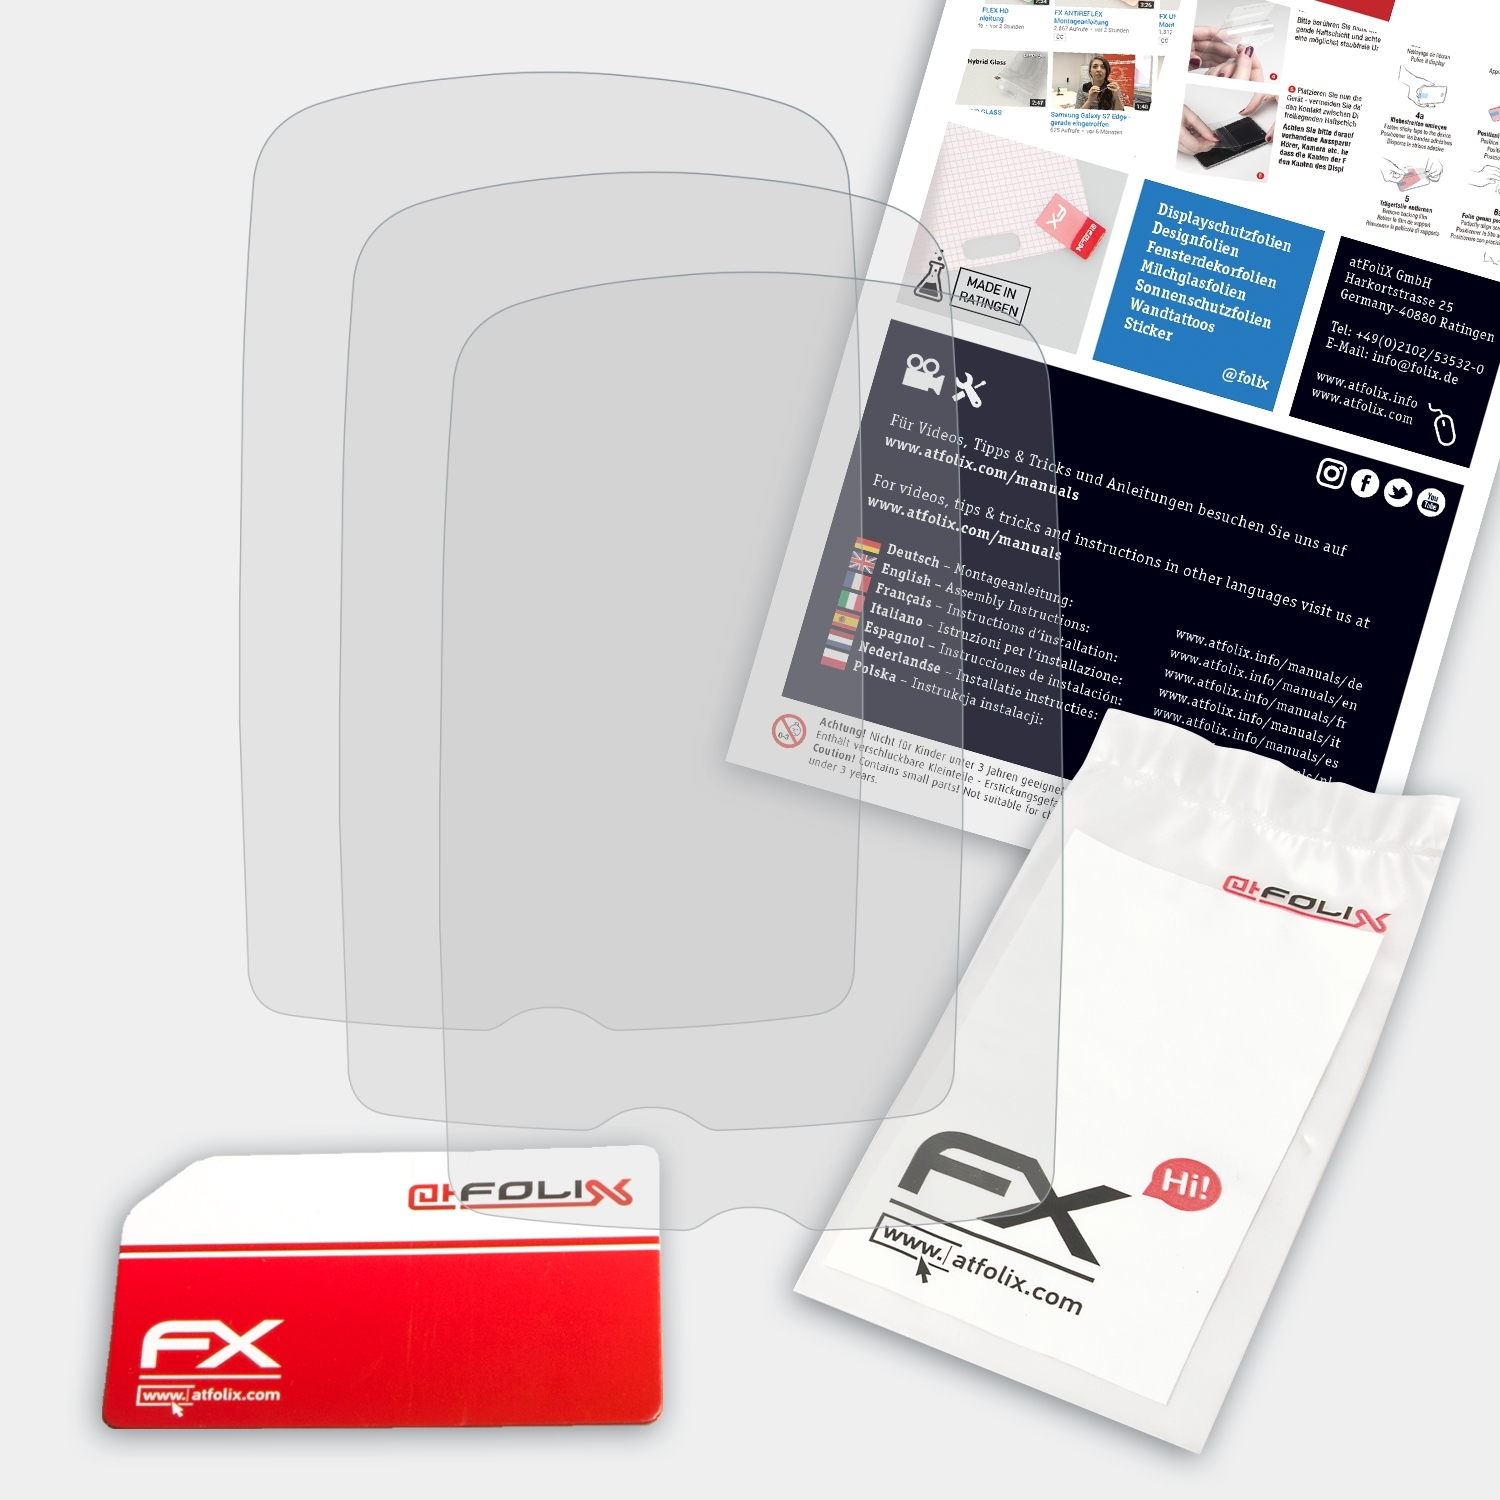 ATFOLIX 3x FX-Antireflex Cyclo Displayschutz(für Mio 205 200 HC) 